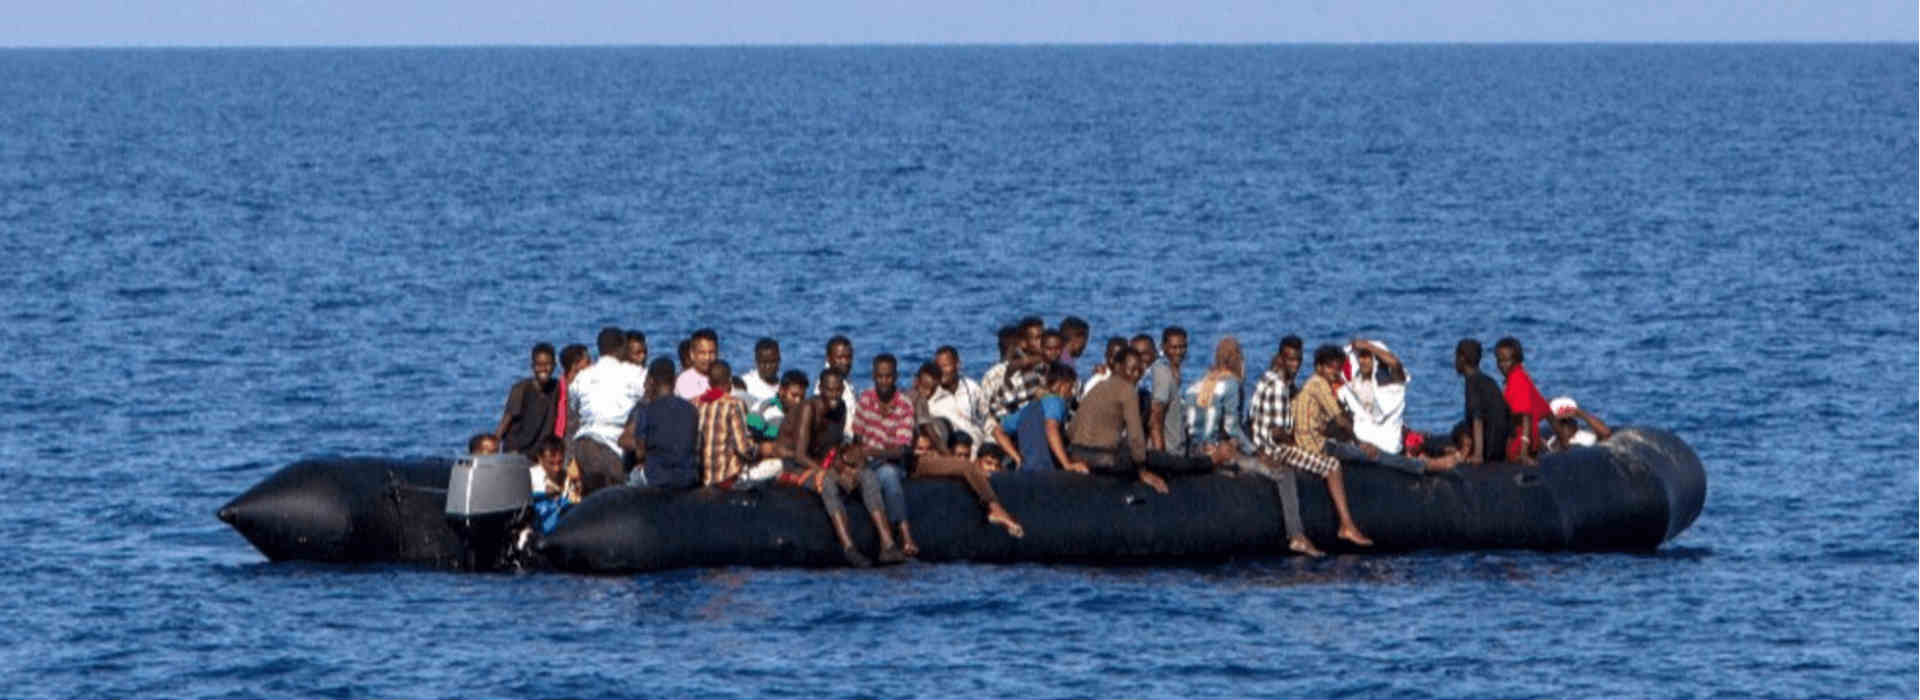 Immigrati su gommone in mare.